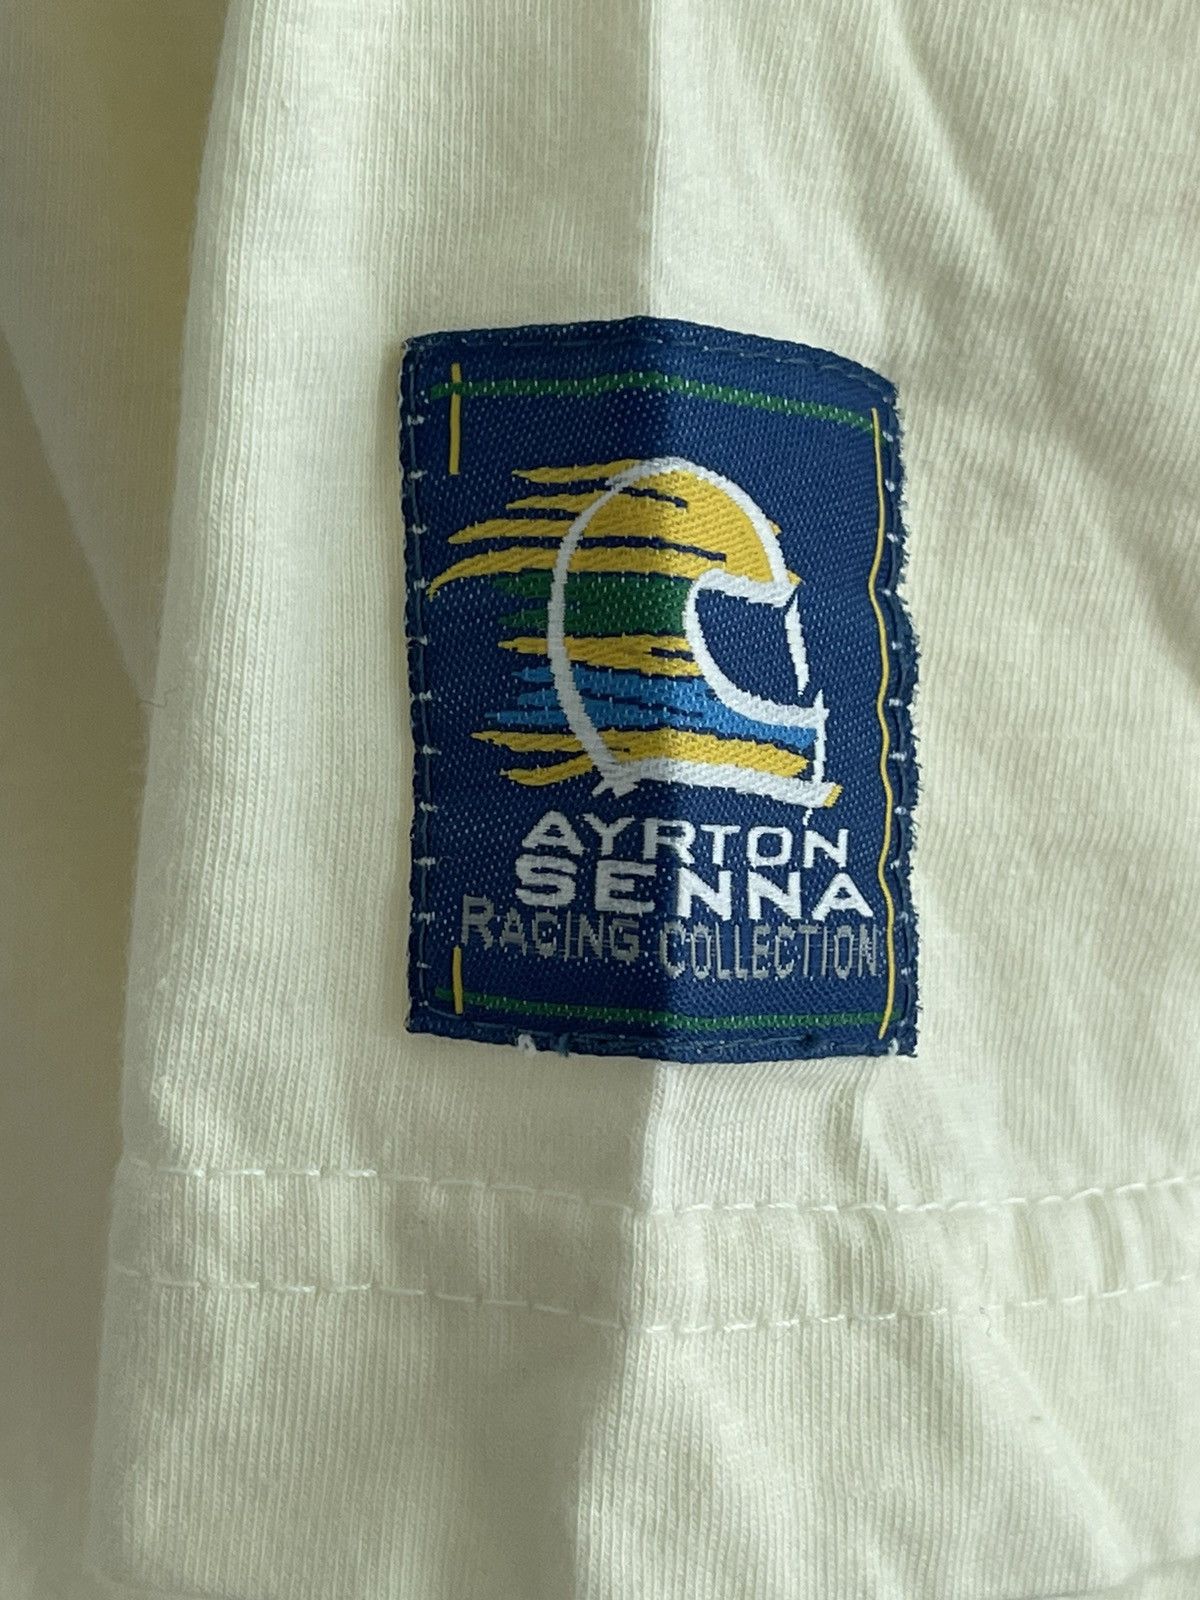 Vintage Ayrton Senna Racing collection tshirt - 8